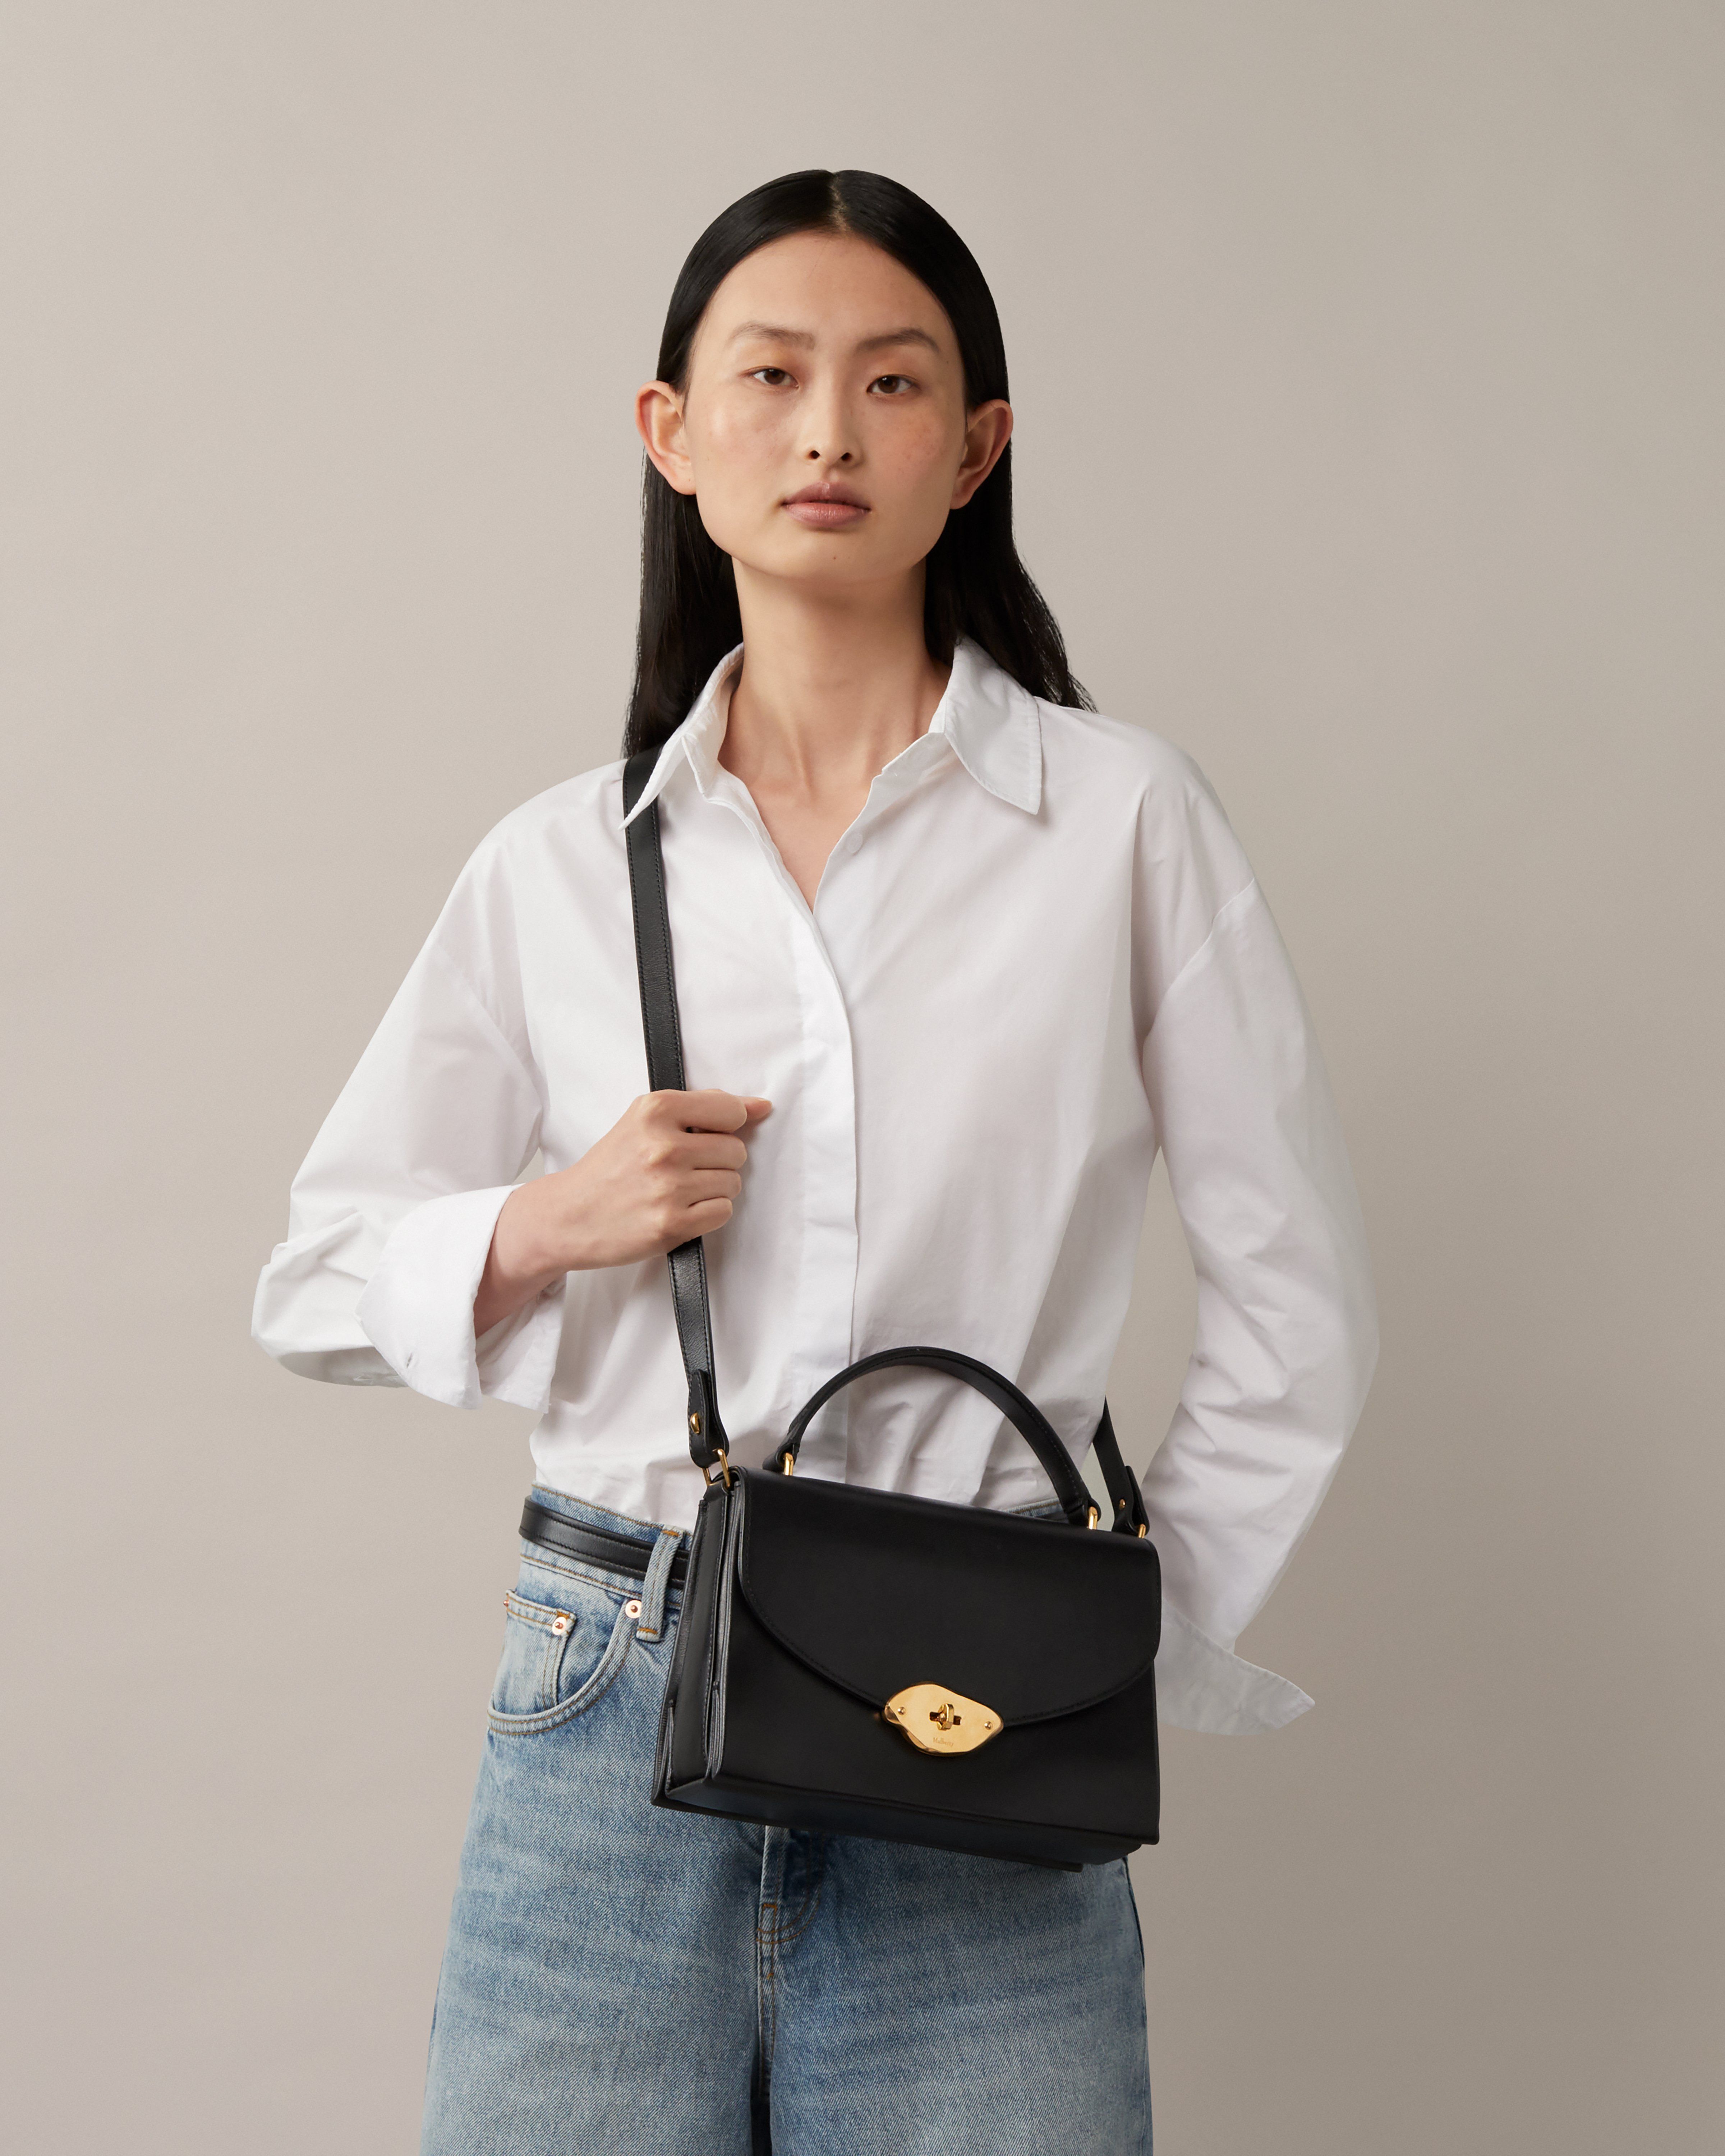 Model trägt eine Mulberry-Lana-Tasche mit Henkel in Schwarz